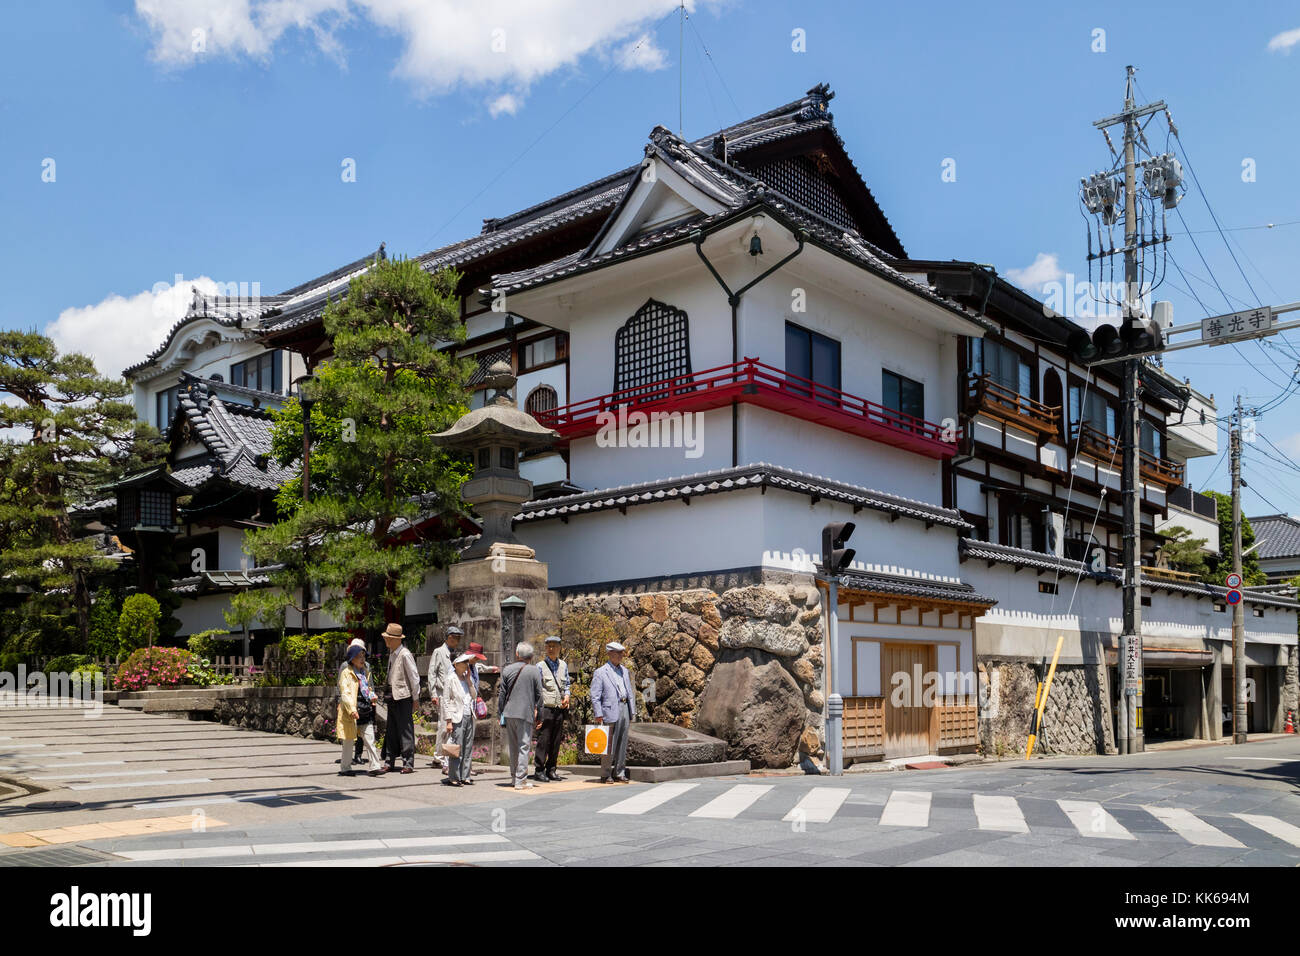 Nagano, Japan - Juni 5, 2017: Straße Ecke in Nagano mit traditionellen Häusern und japanische Touristen Stockfoto